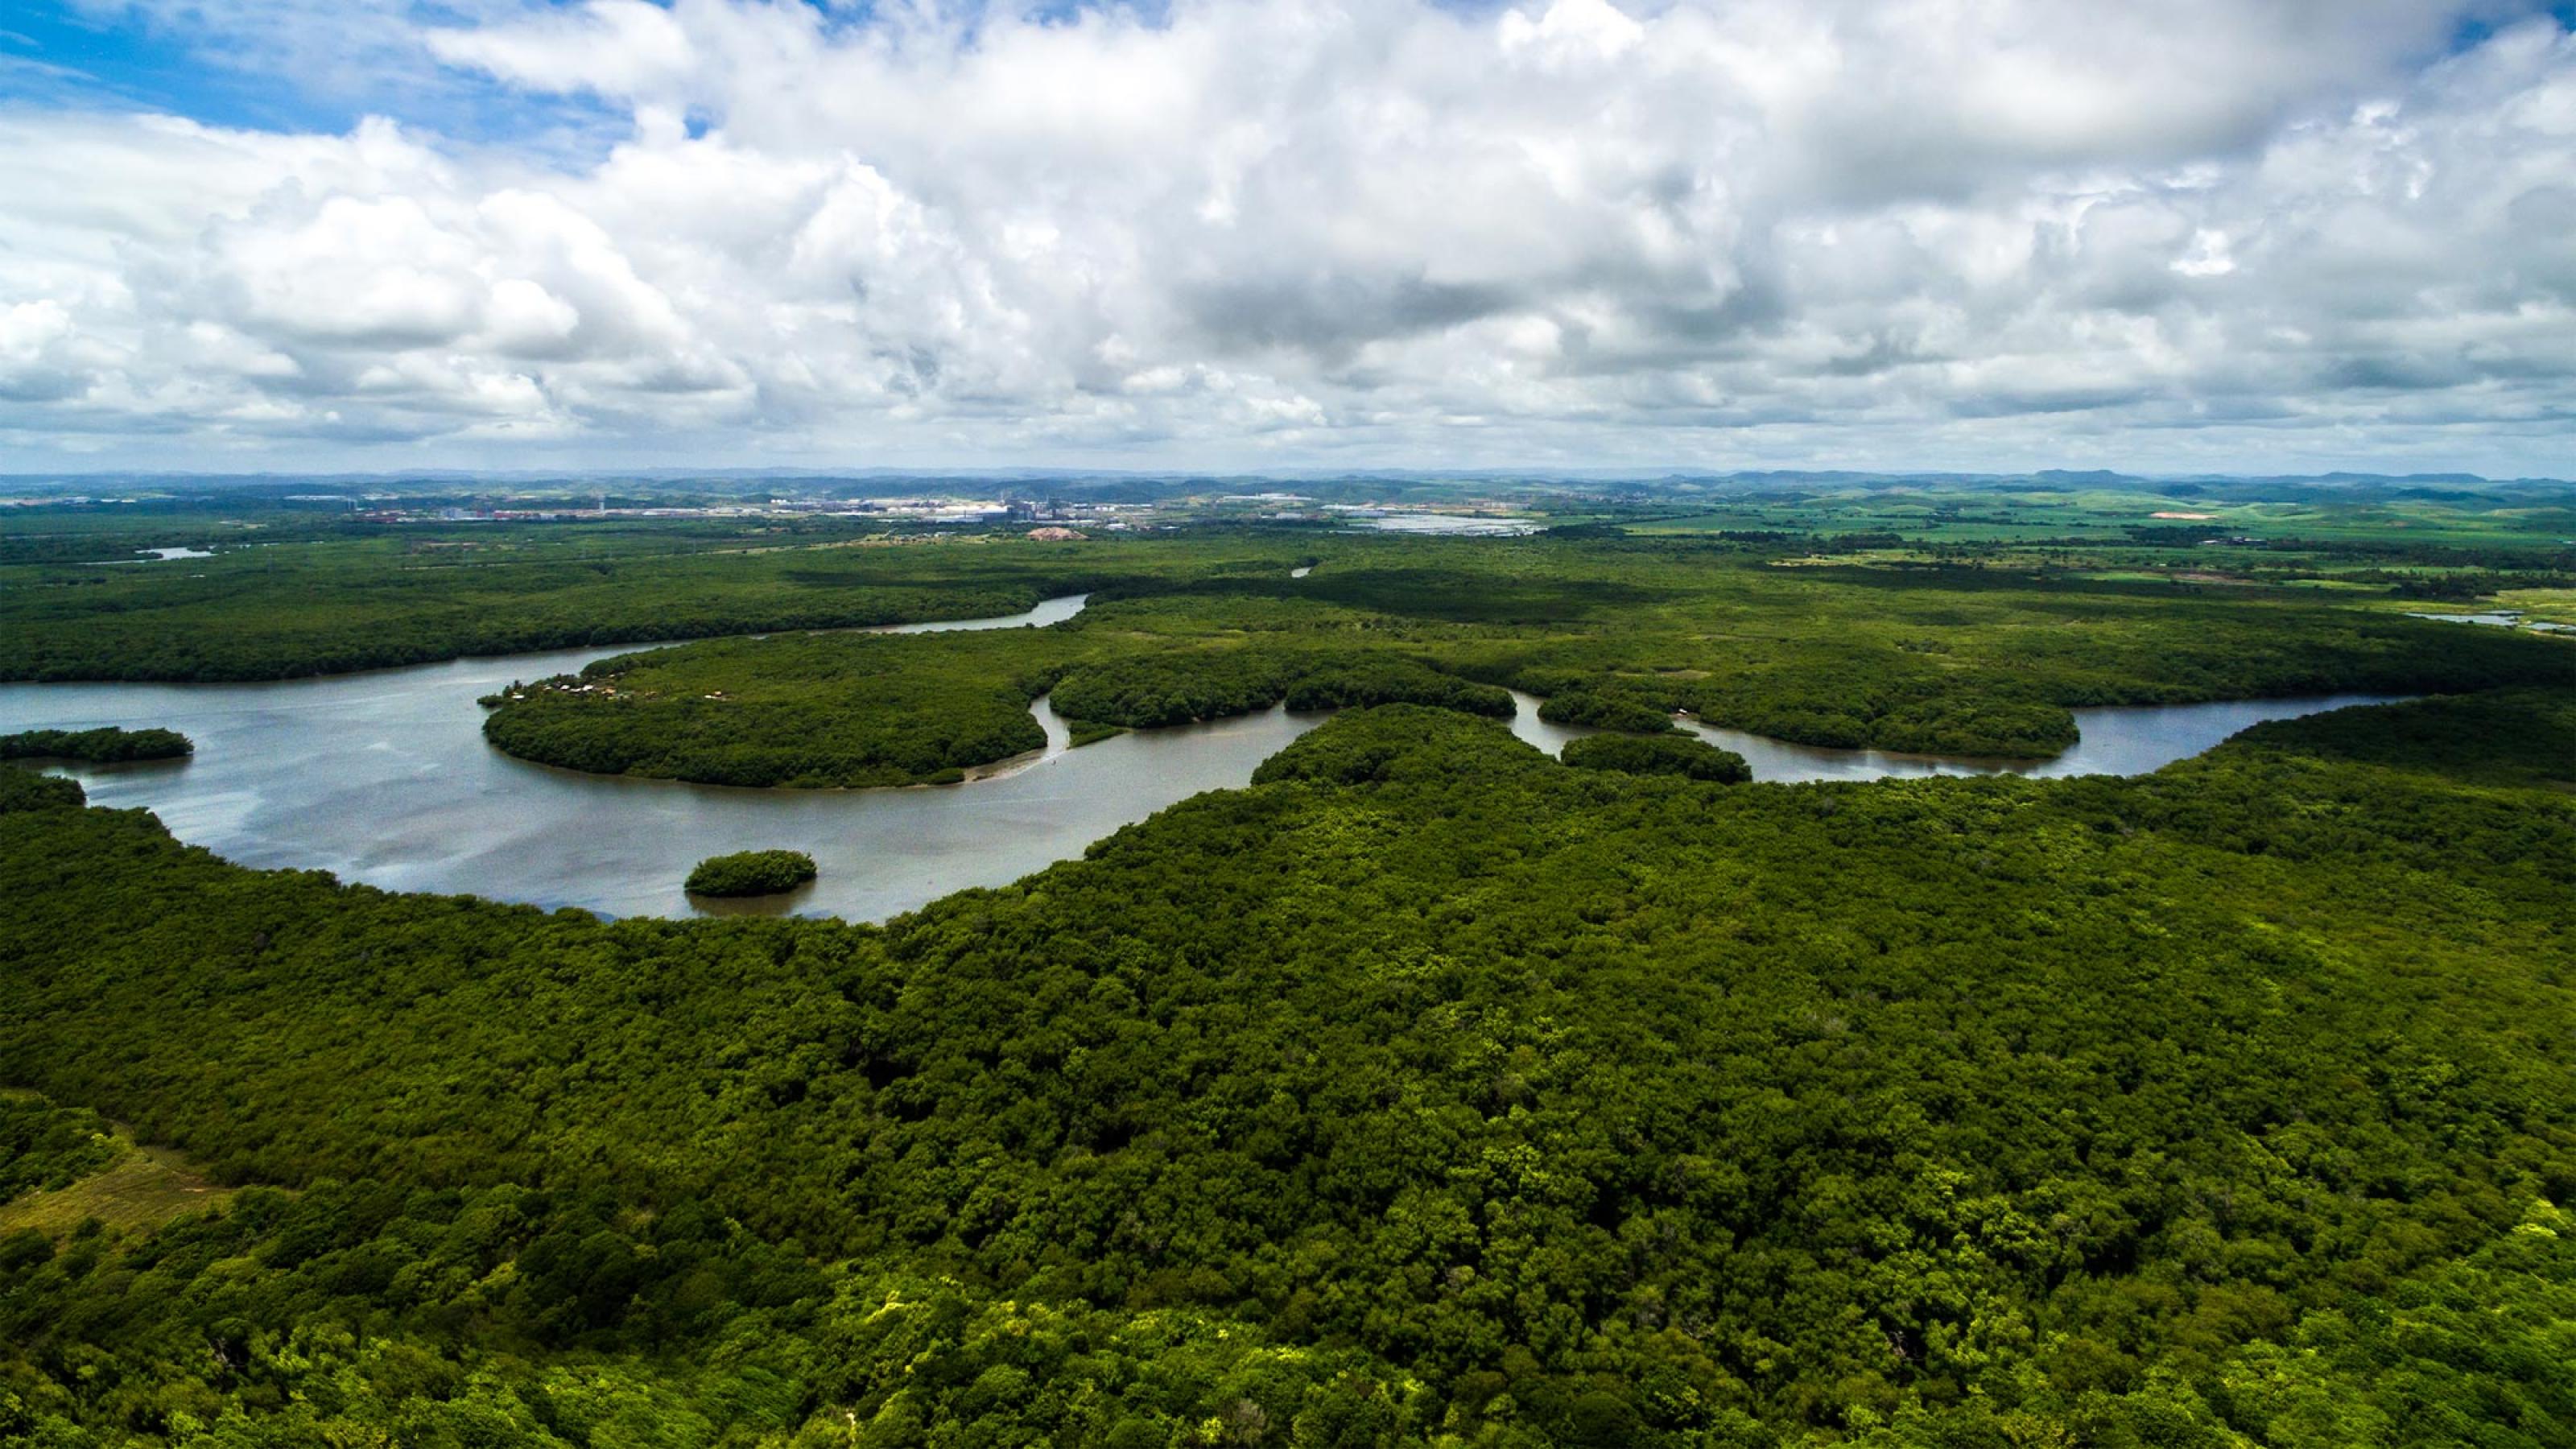 Luftbild eines Regenwalds, der von einem Fluss durchflossen wird.